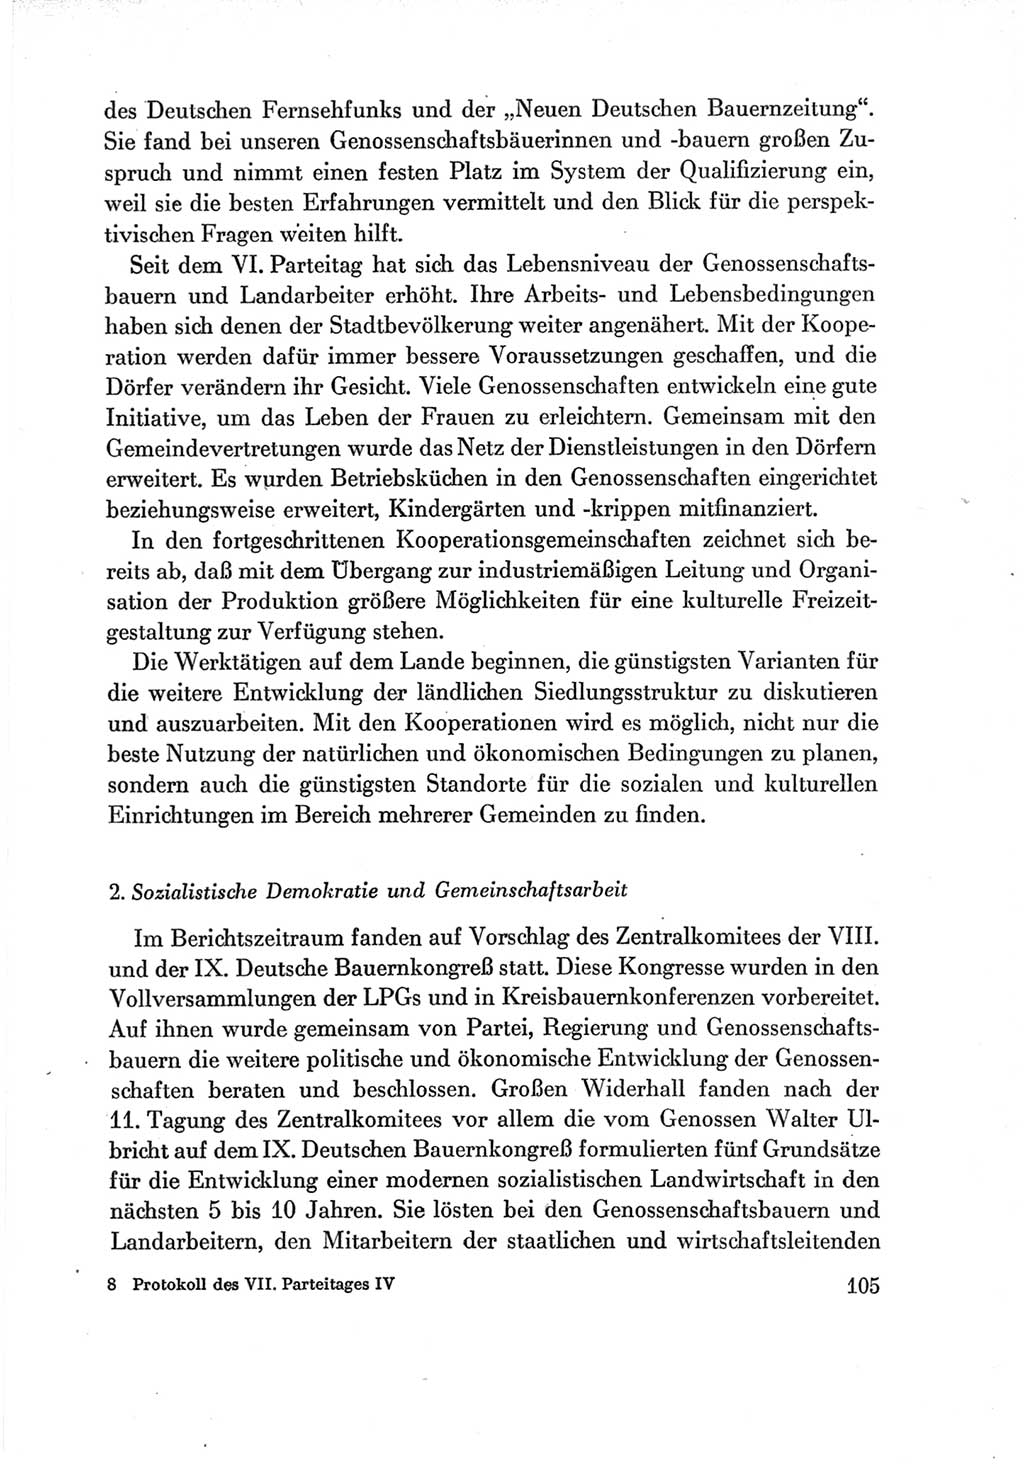 Protokoll der Verhandlungen des Ⅶ. Parteitages der Sozialistischen Einheitspartei Deutschlands (SED) [Deutsche Demokratische Republik (DDR)] 1967, Band Ⅳ, Seite 105 (Prot. Verh. Ⅶ. PT SED DDR 1967, Bd. Ⅳ, S. 105)